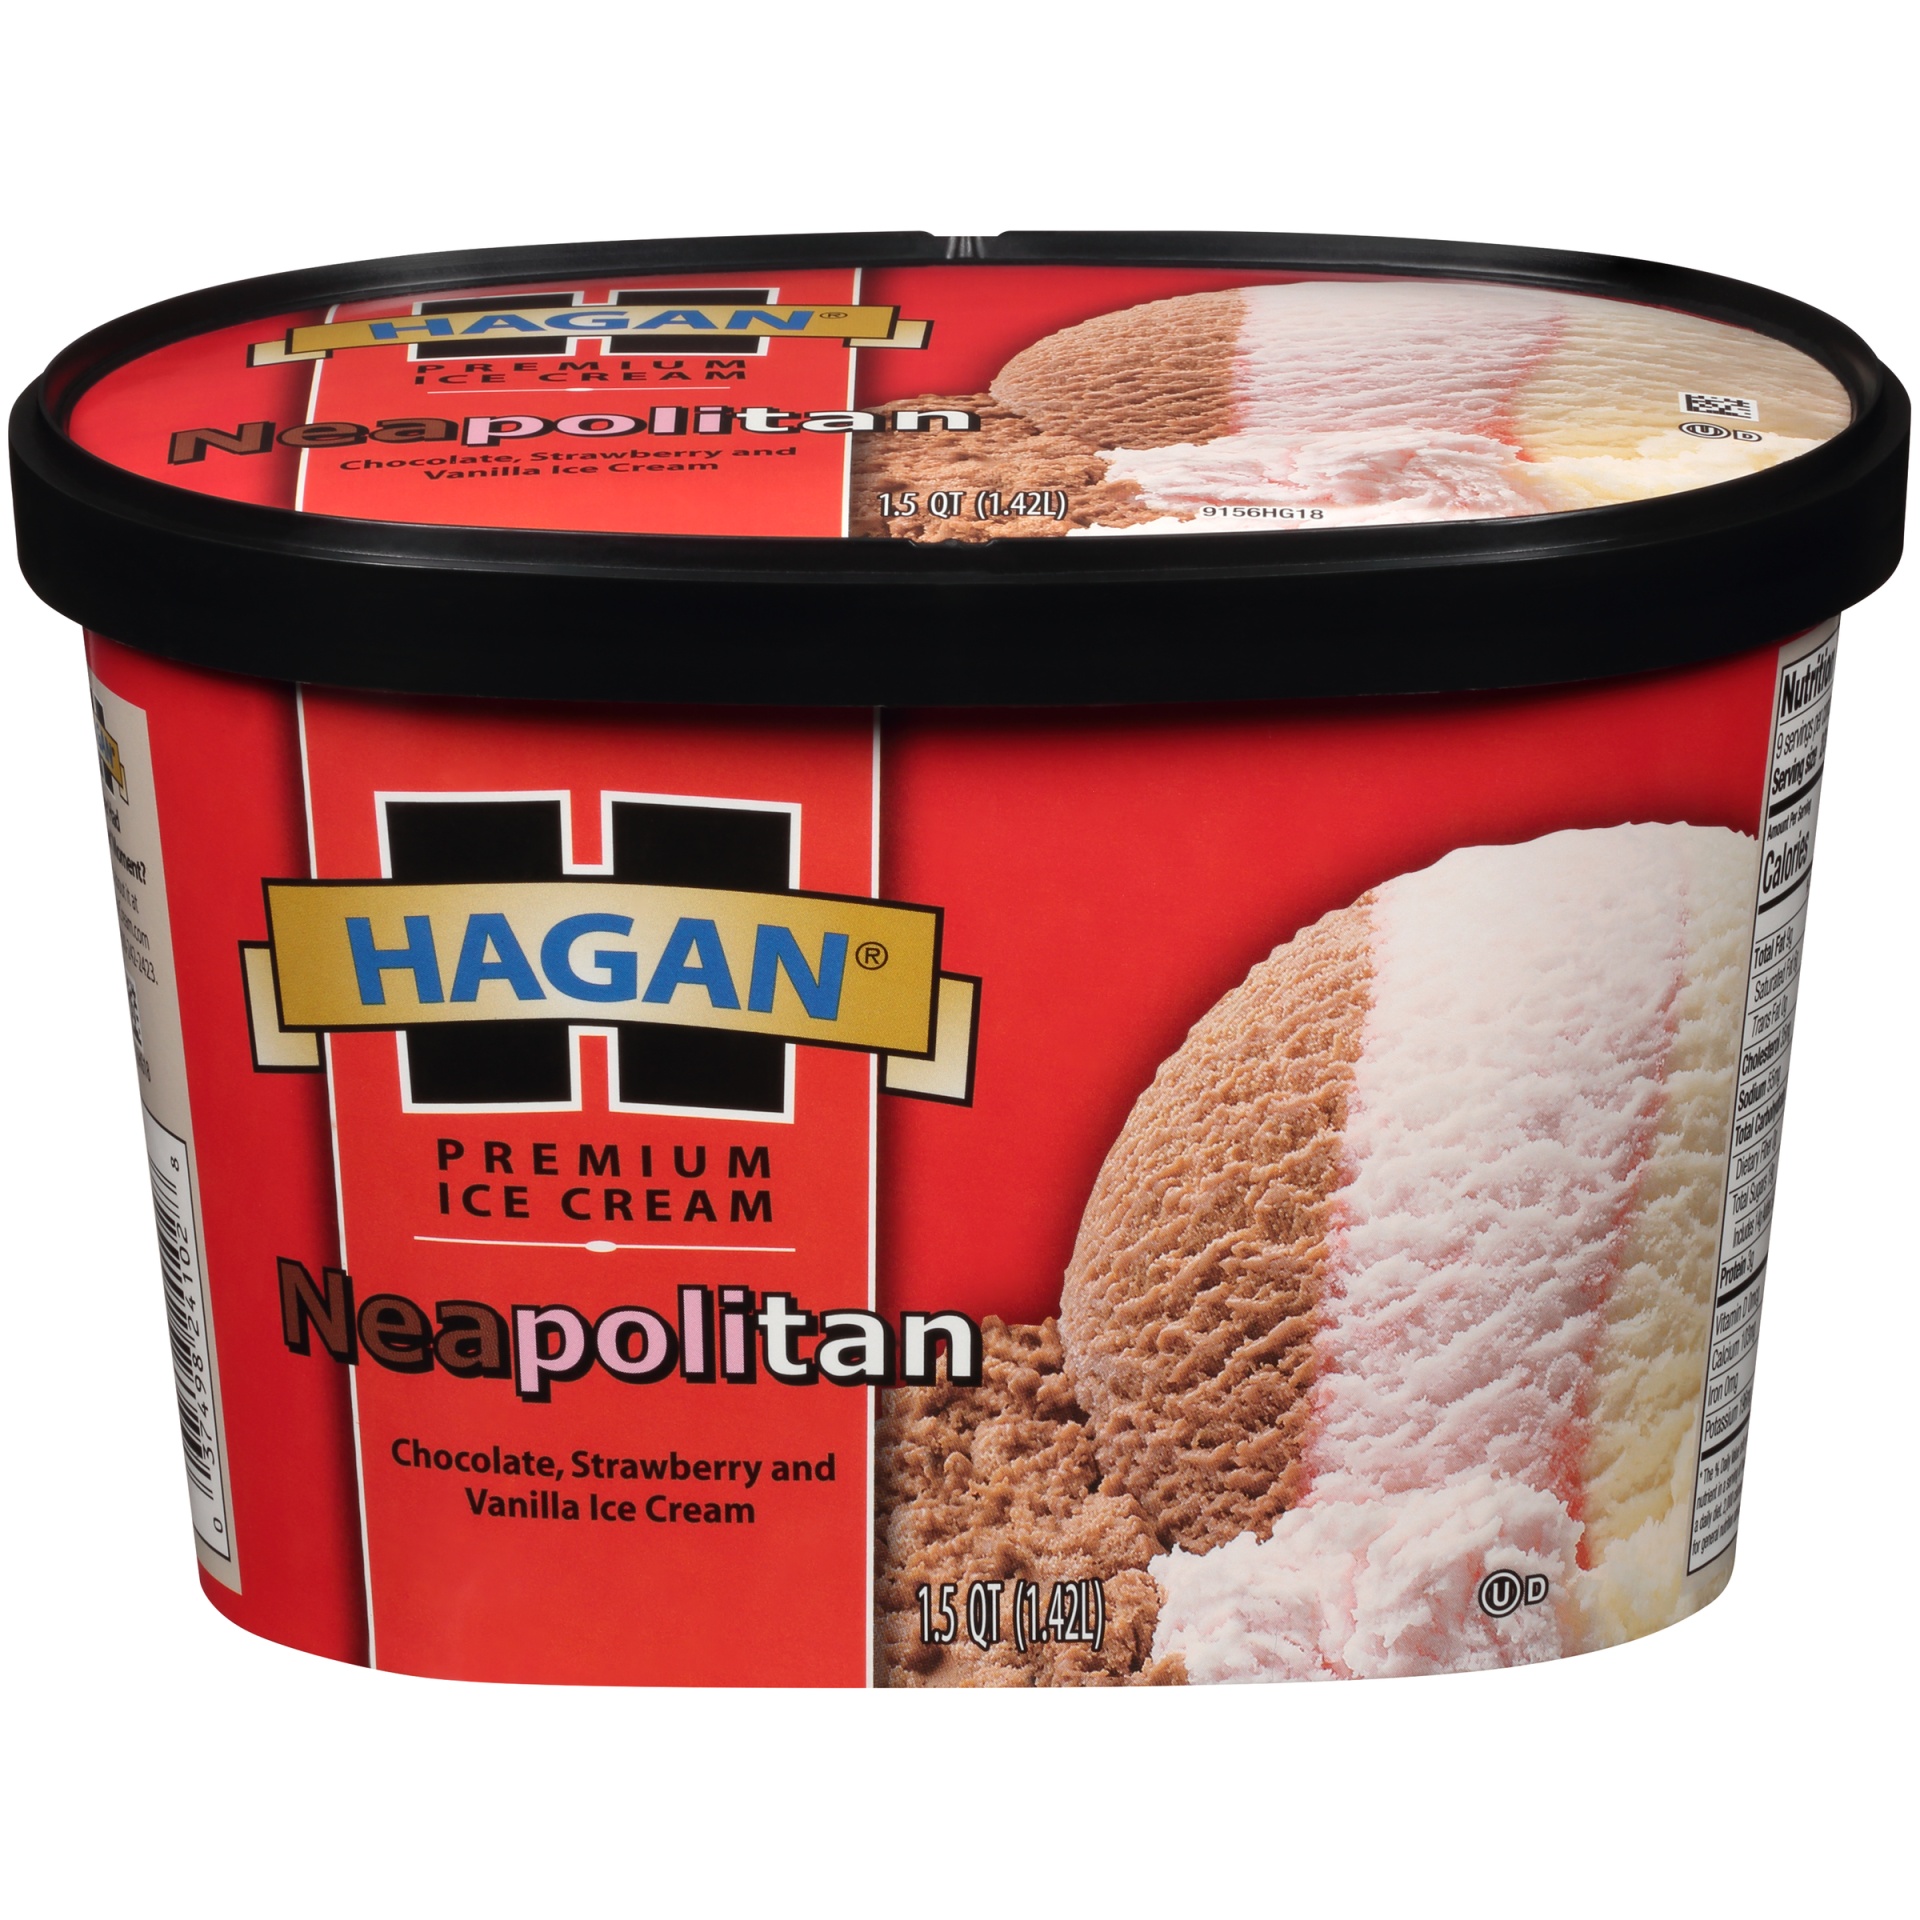 slide 1 of 7, Hagan Neapolitan Premium Ice Cream, 1.5 qt